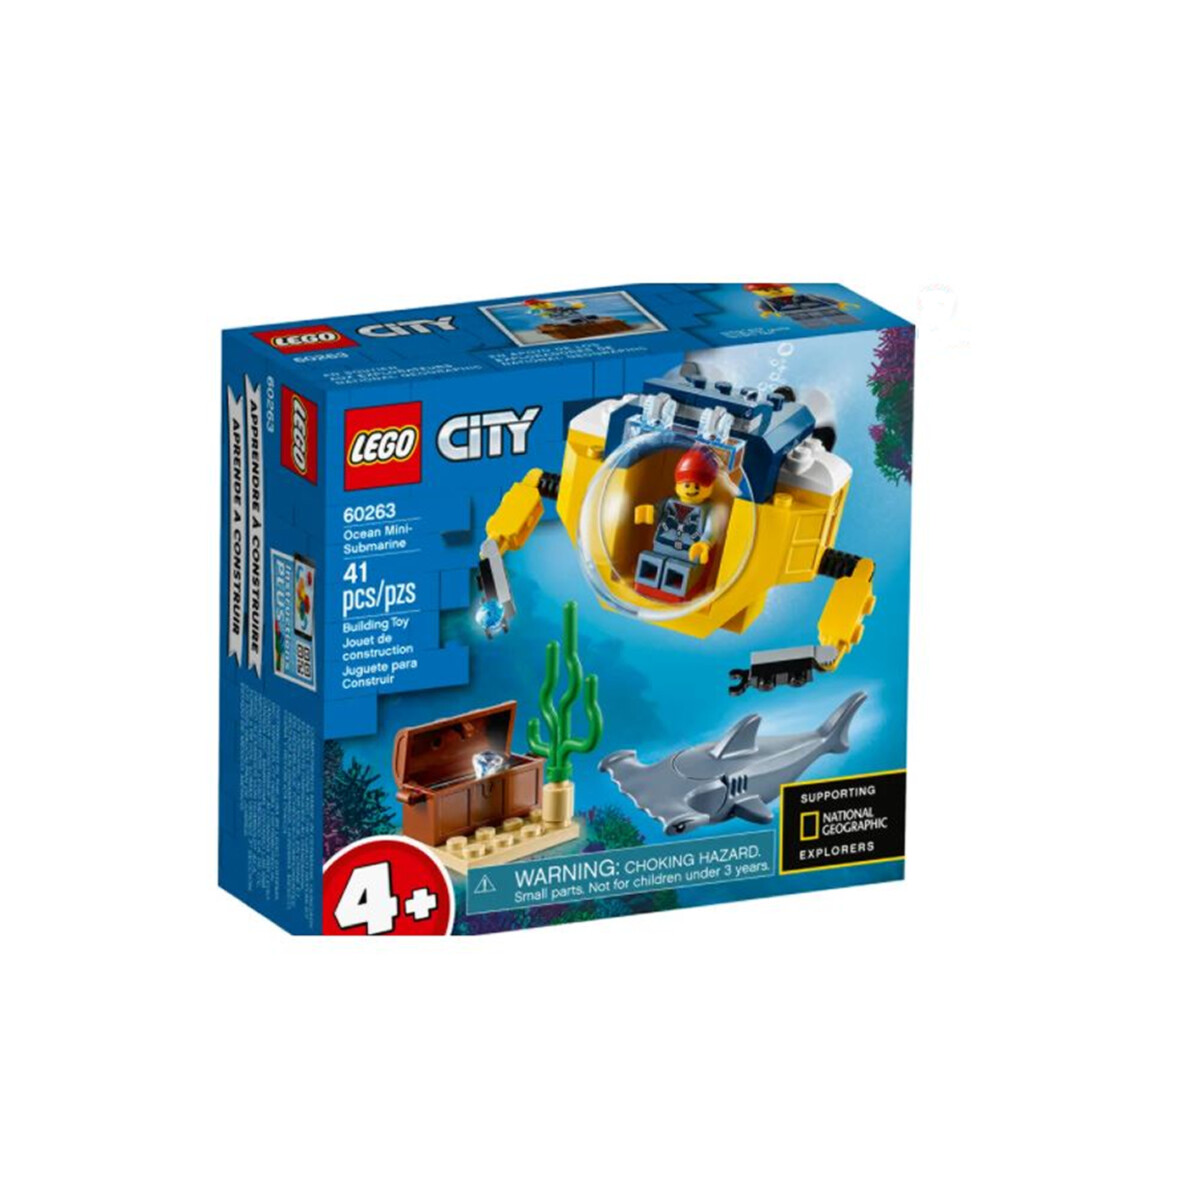 LEGO CITY Ocean Mini-Submarine 60263 